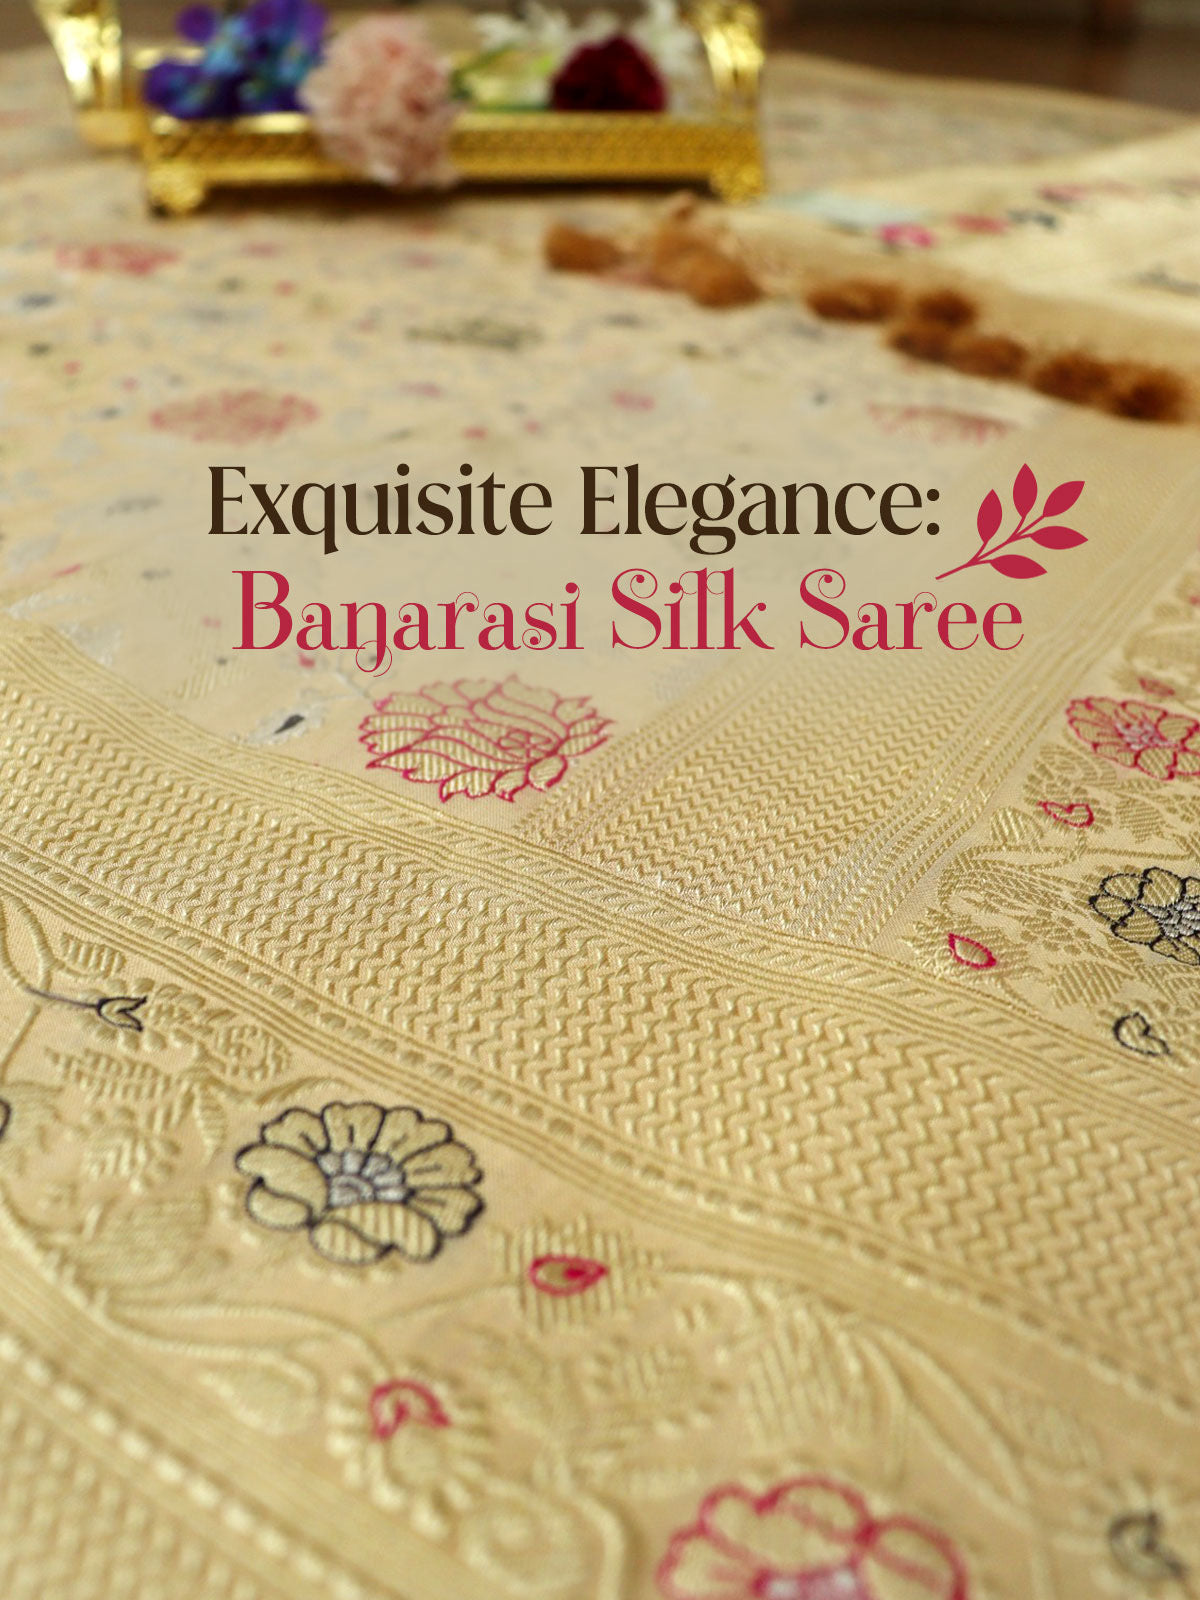 Buy banarasi saree online